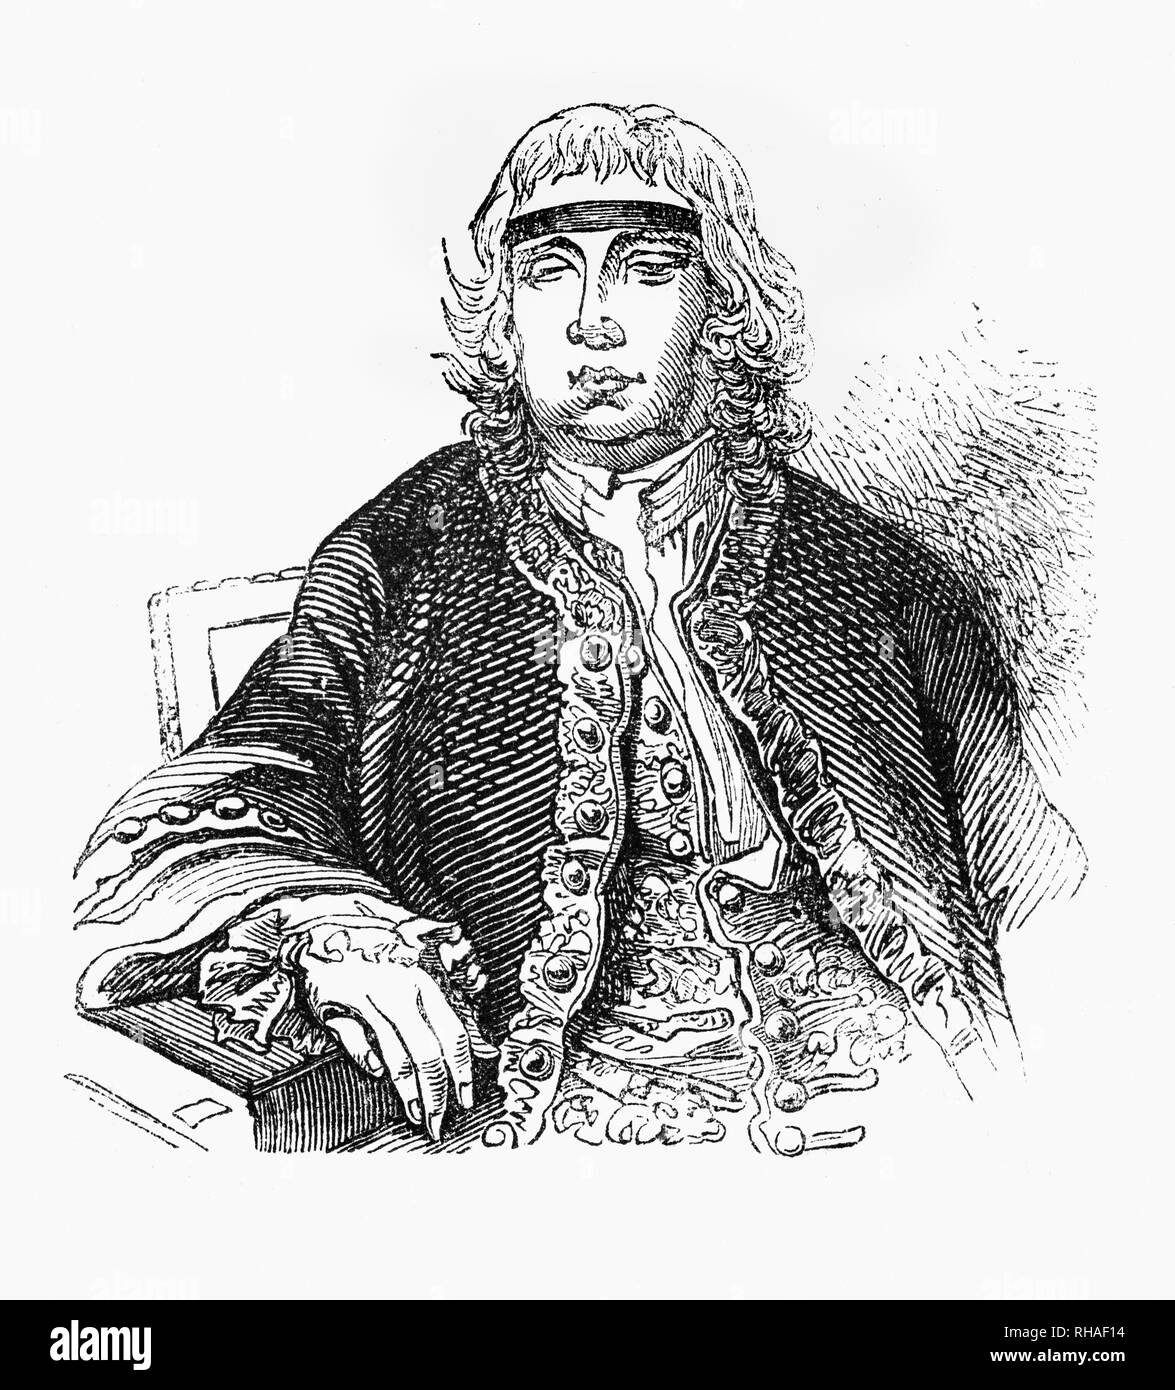 Portrait de Sir John Fielding (1721-1780), magistrat et réformateur social anglais du 18e siècle. En dépit d'être aveuglé âgés de19, John a étudié le droit avec son demi-frère et premier magistrat Henry Fielding. John Fielding était connu comme le 'Bec' aveugle pour sa capacité à identifier les criminels par le son de leur voix. Il éradiquer la corruption et l'amélioration de la justice, à Londres. Ils ont formé la première force de police professionnelle, la Bow Street Runners, a distribué la Gazette de la police avec des descriptions de criminels connus et a créé le premier service des archives criminelles de la police. Banque D'Images